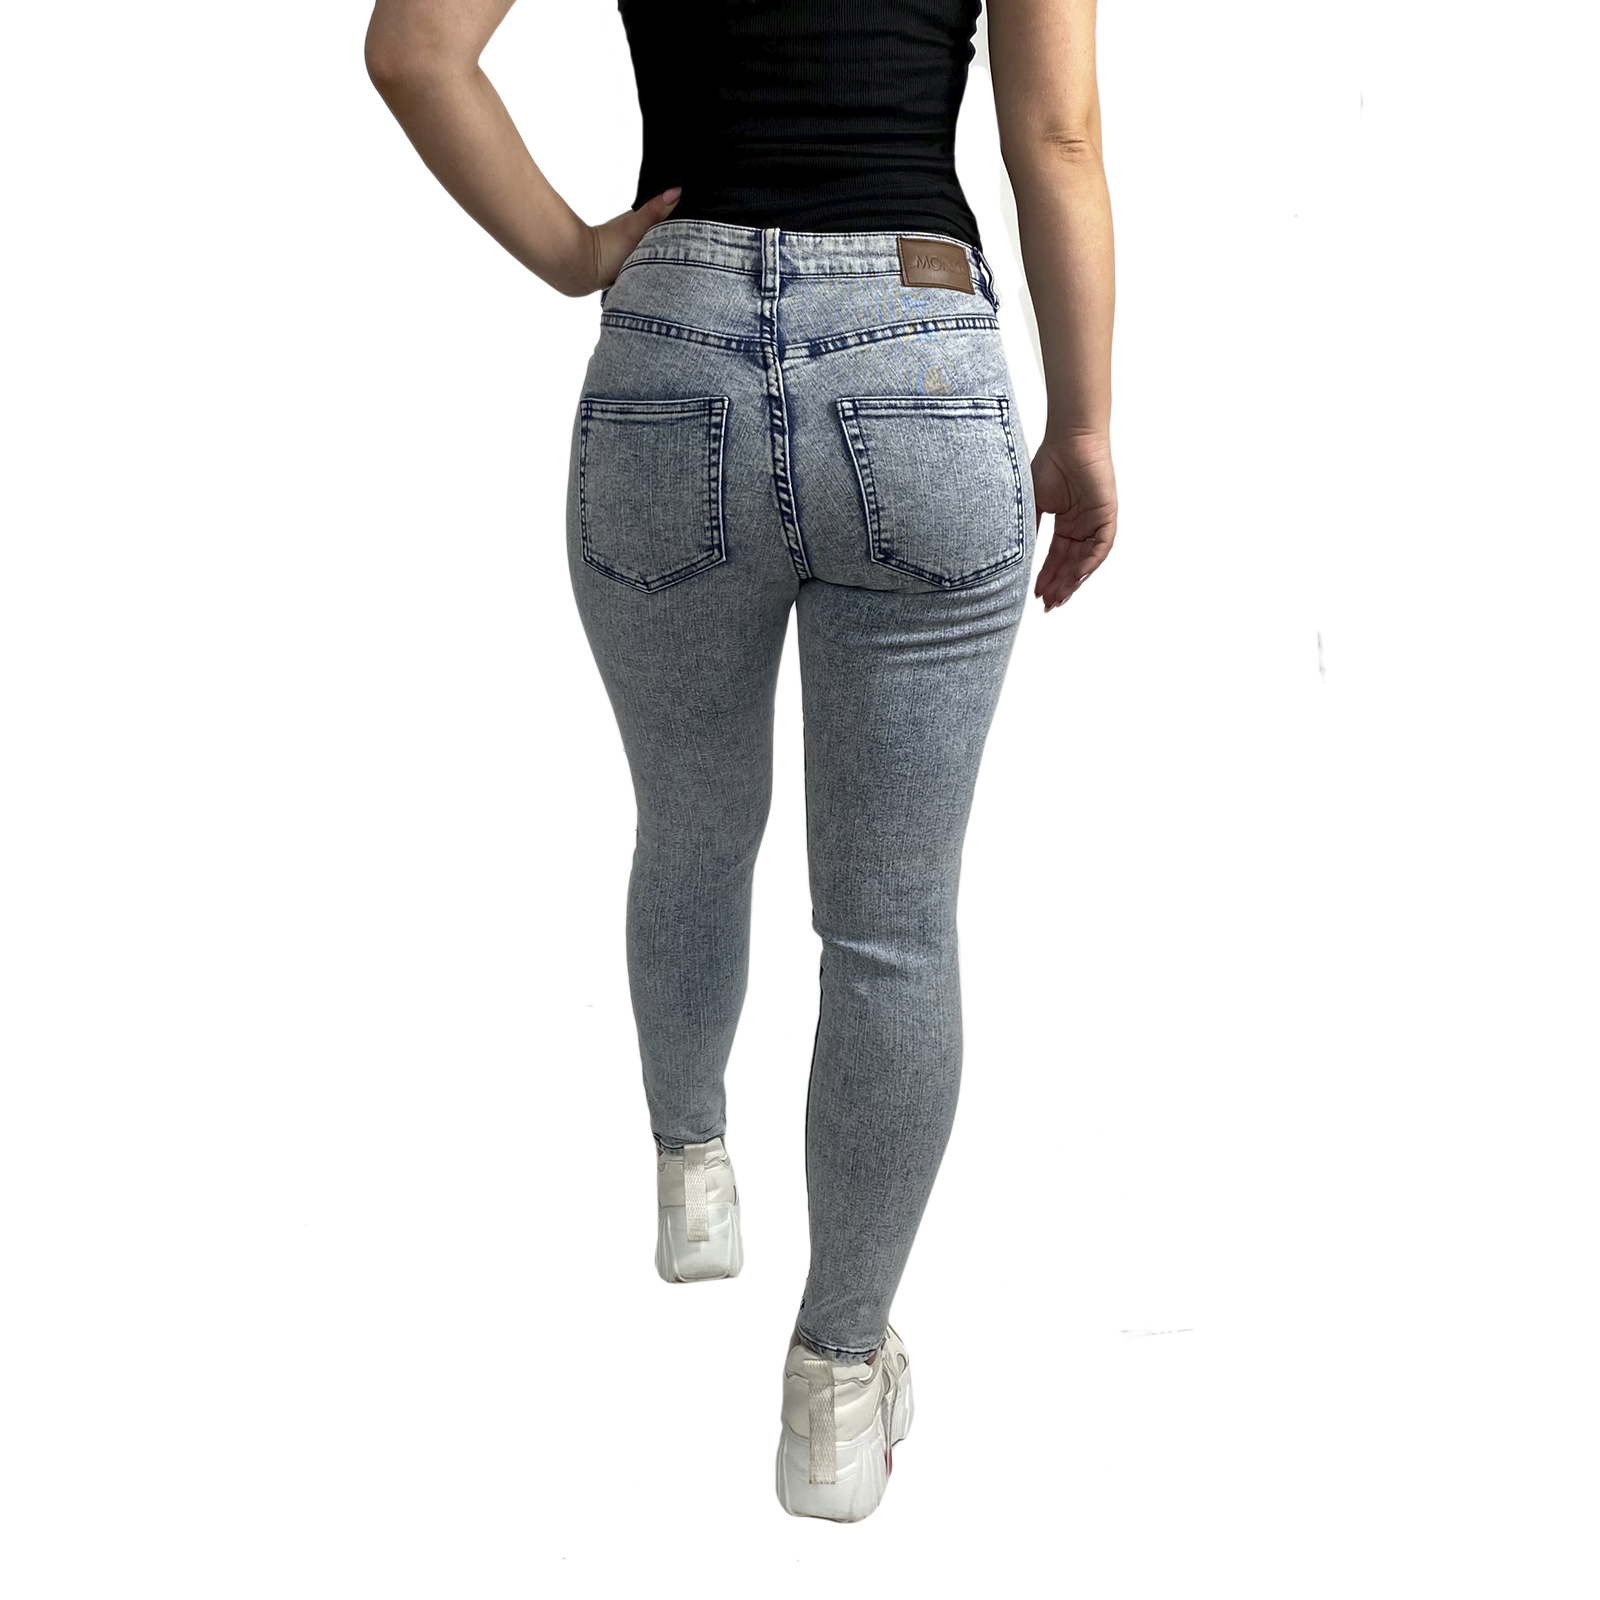 Заказать с доставкой брендовые женские джинсы